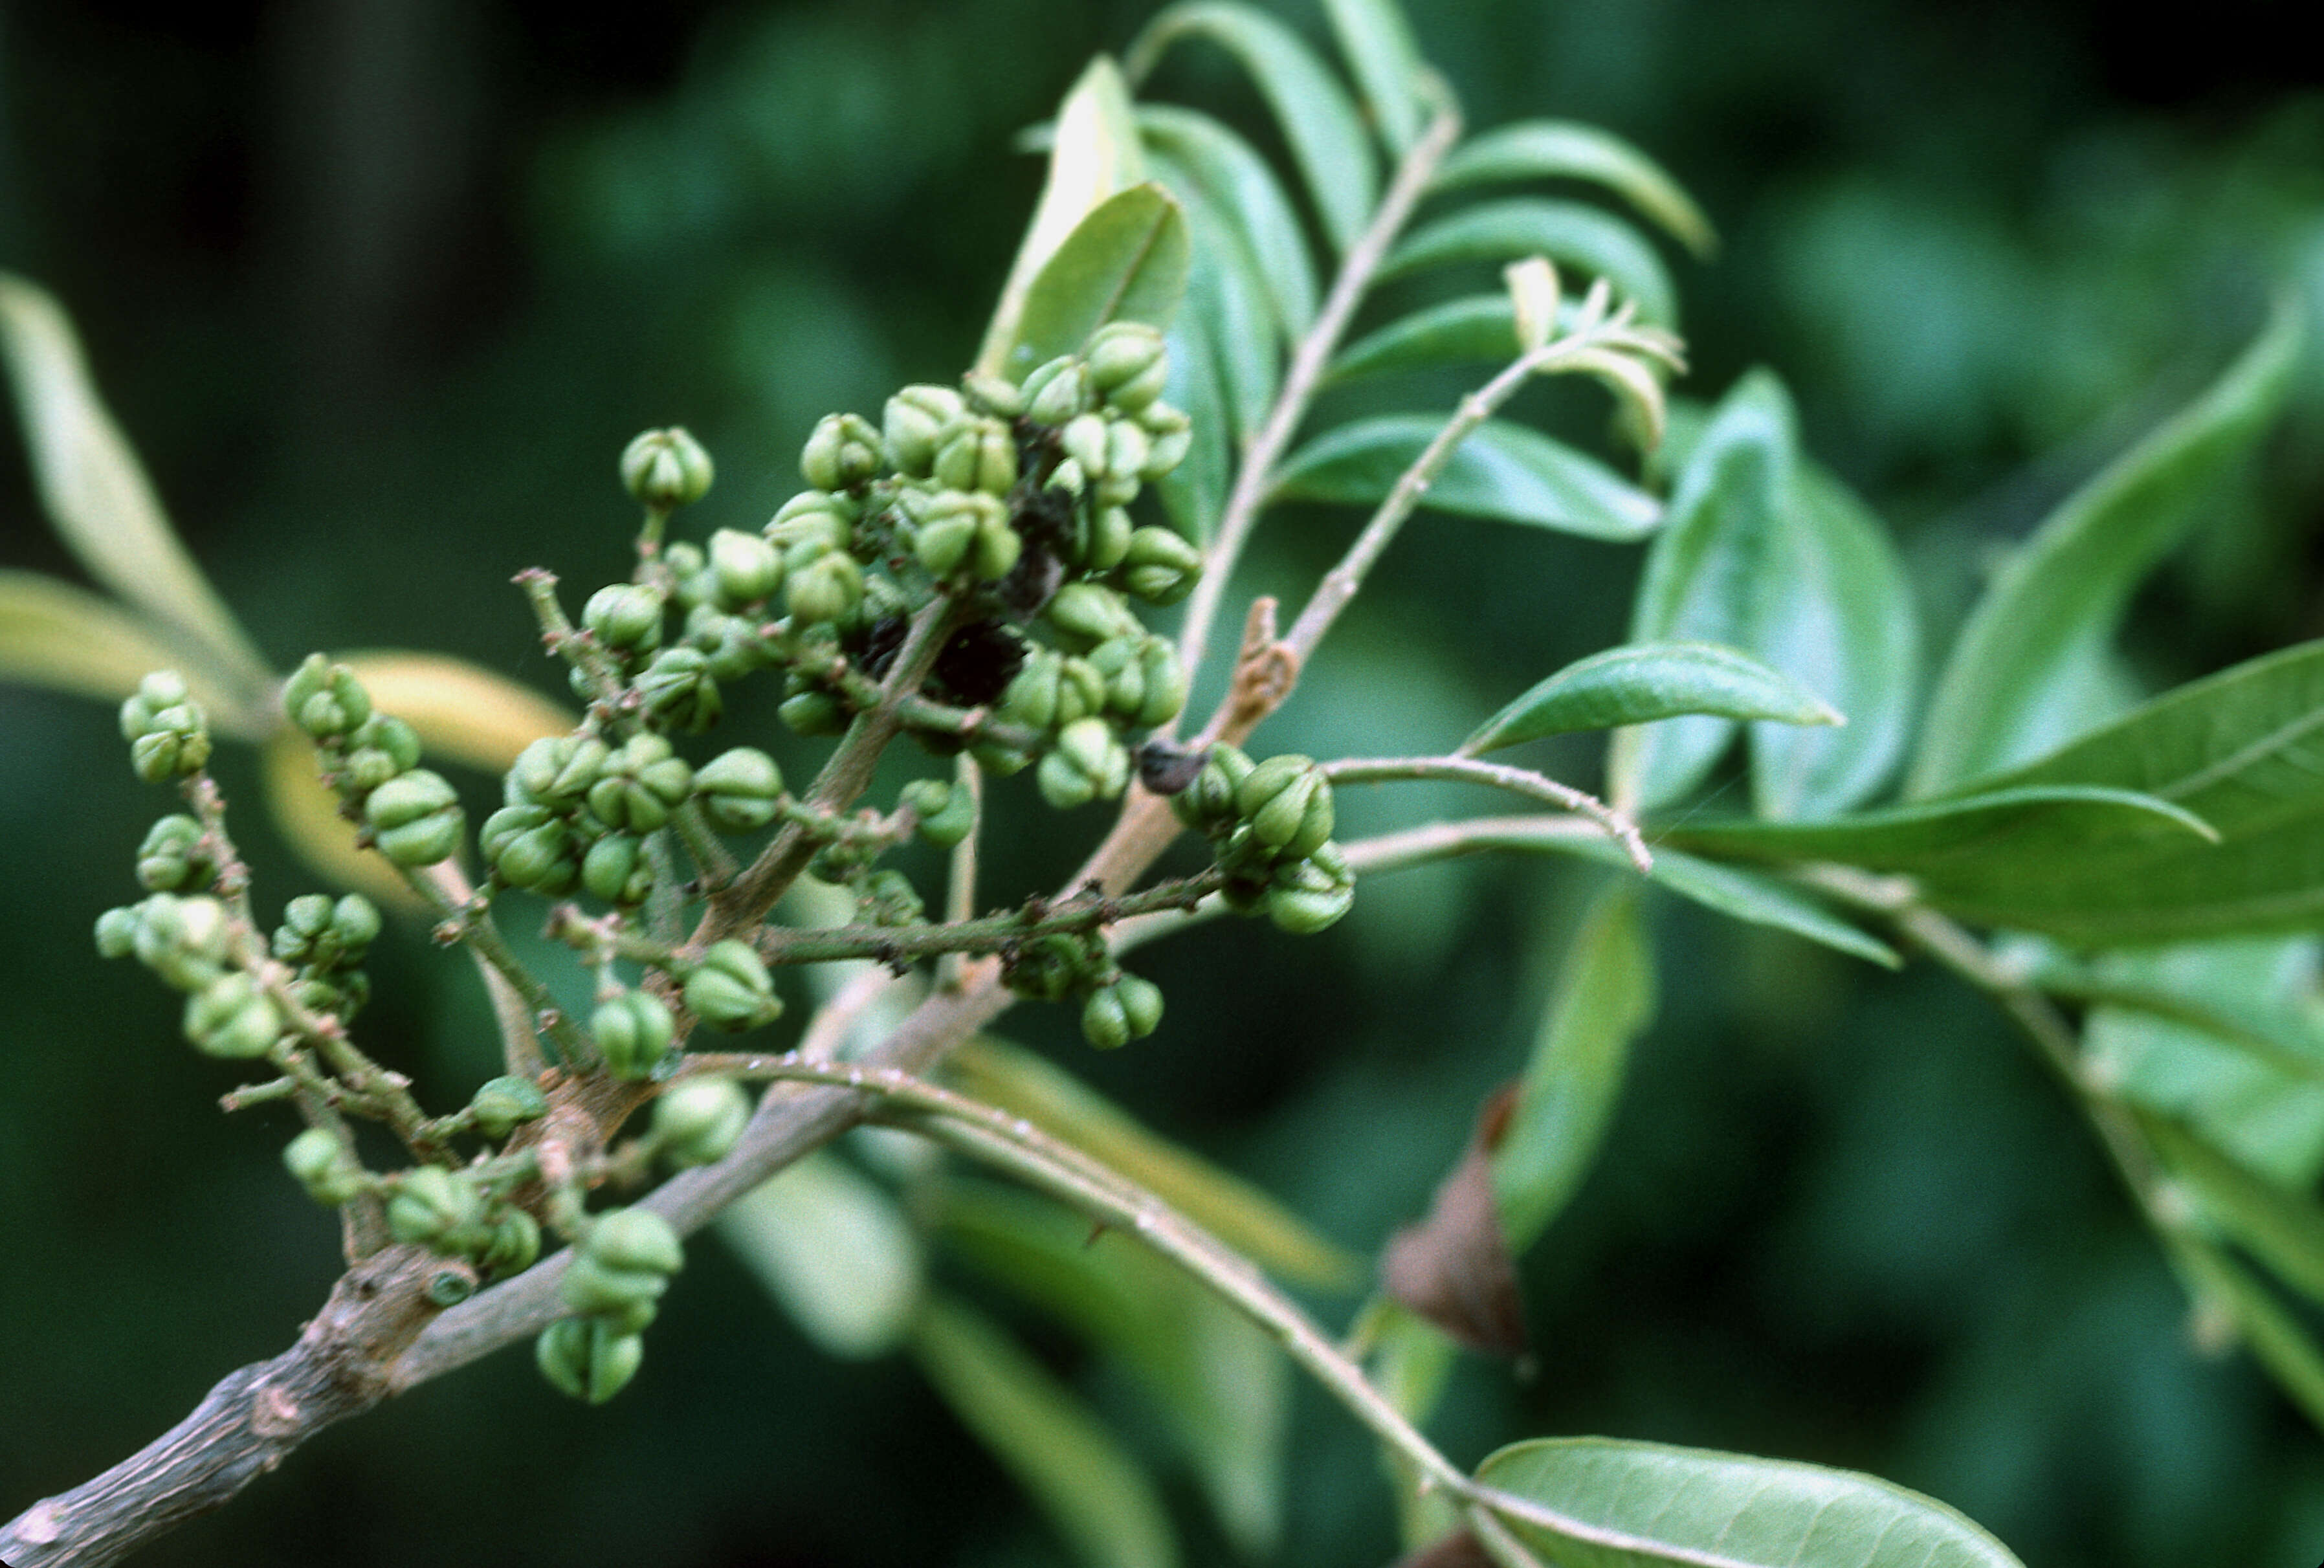 Sivun Zanthoxylum martinicense (Lam.) DC. kuva